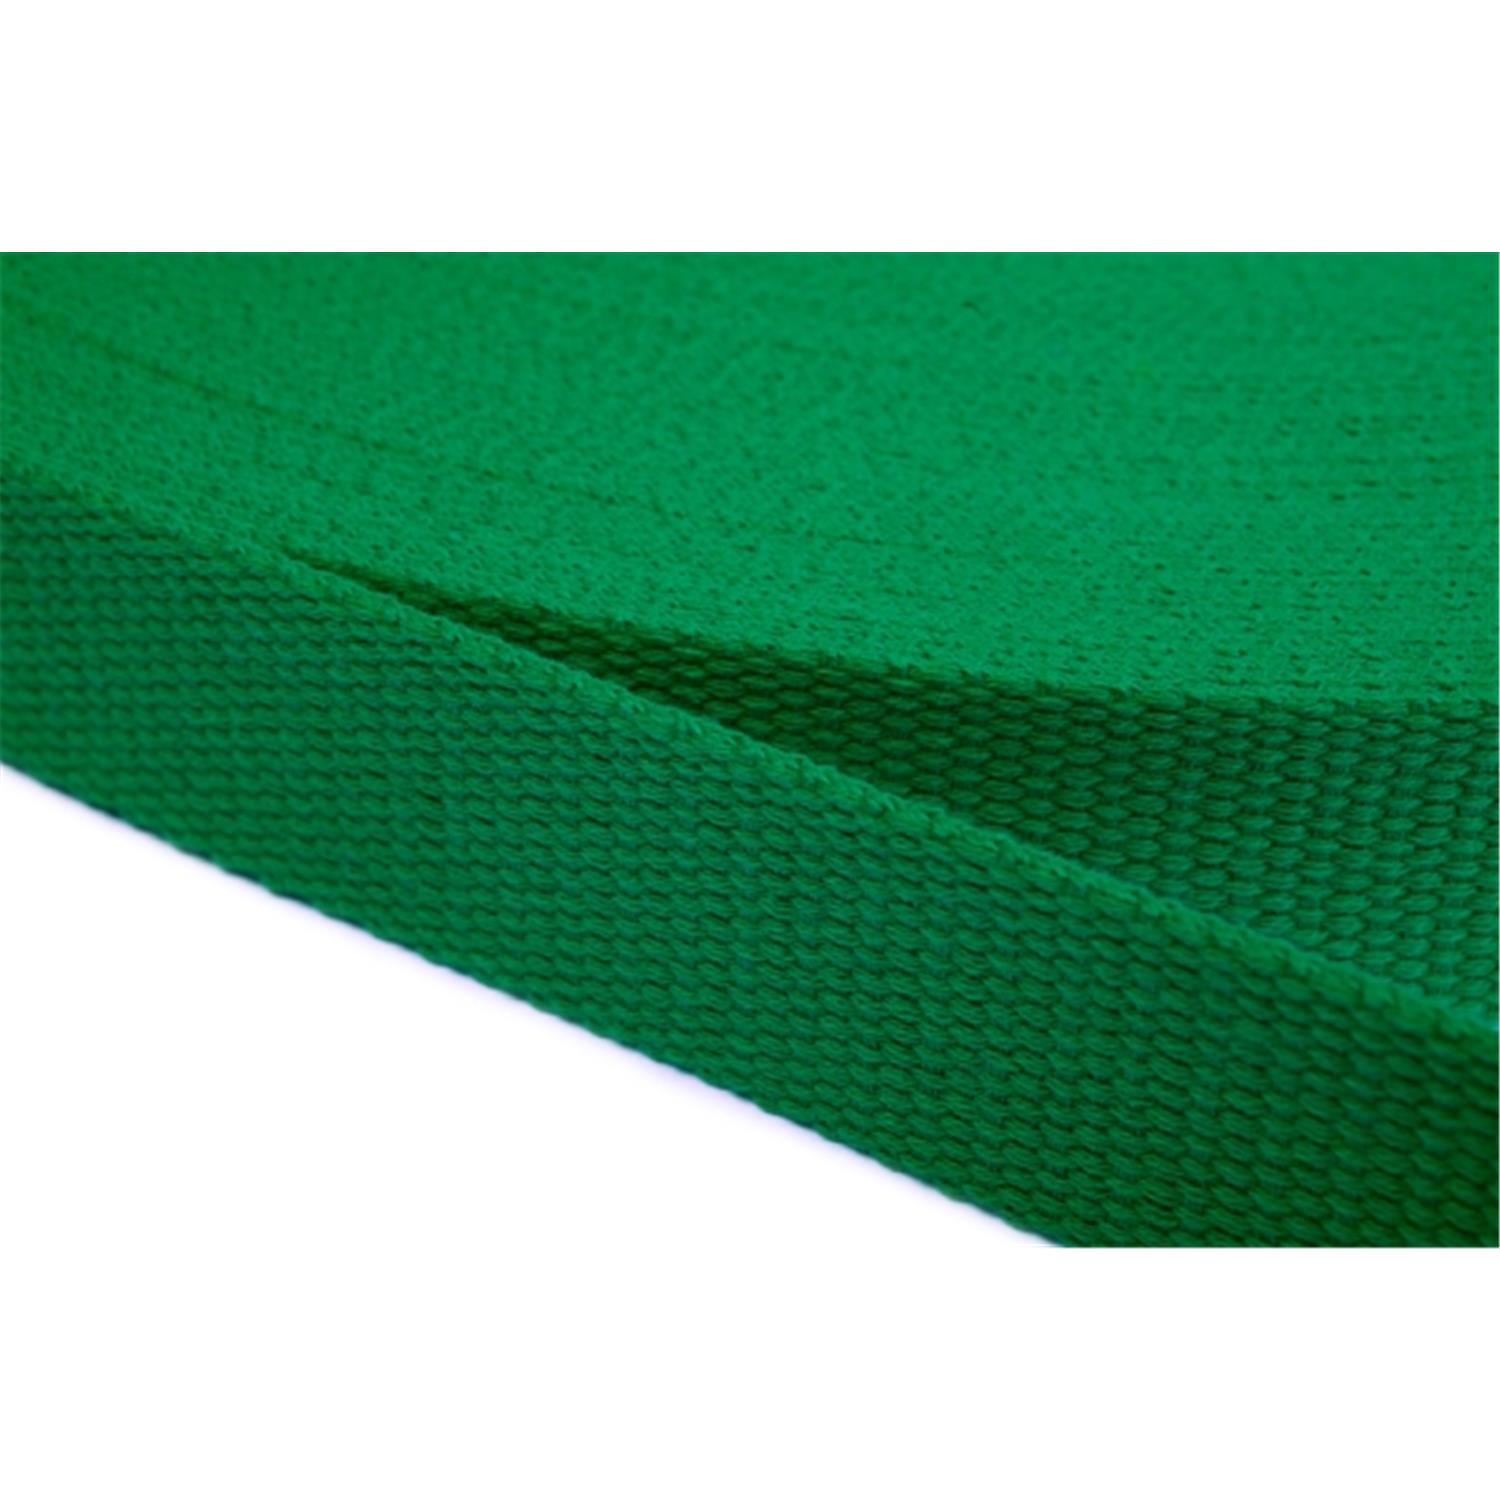 Gurtband aus Baumwolle 20mm in 20 Farben 16 - grün 12 Meter